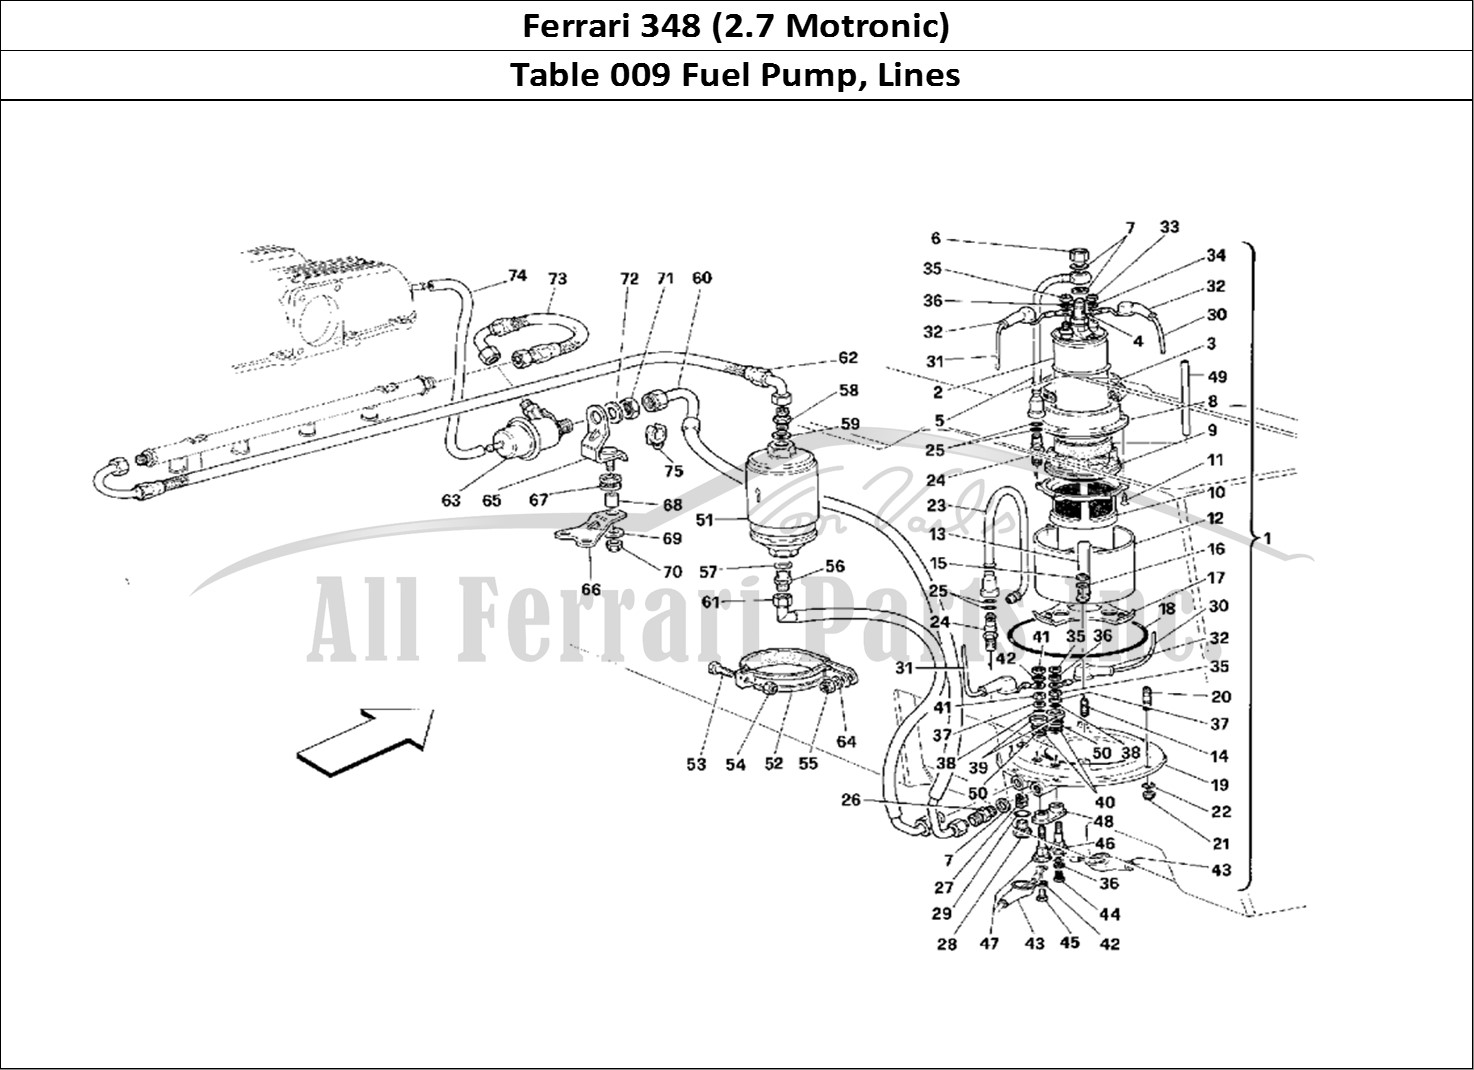 Ferrari Parts Ferrari 348 (2.7 Motronic) Page 009 Fuel Pump and Pipes